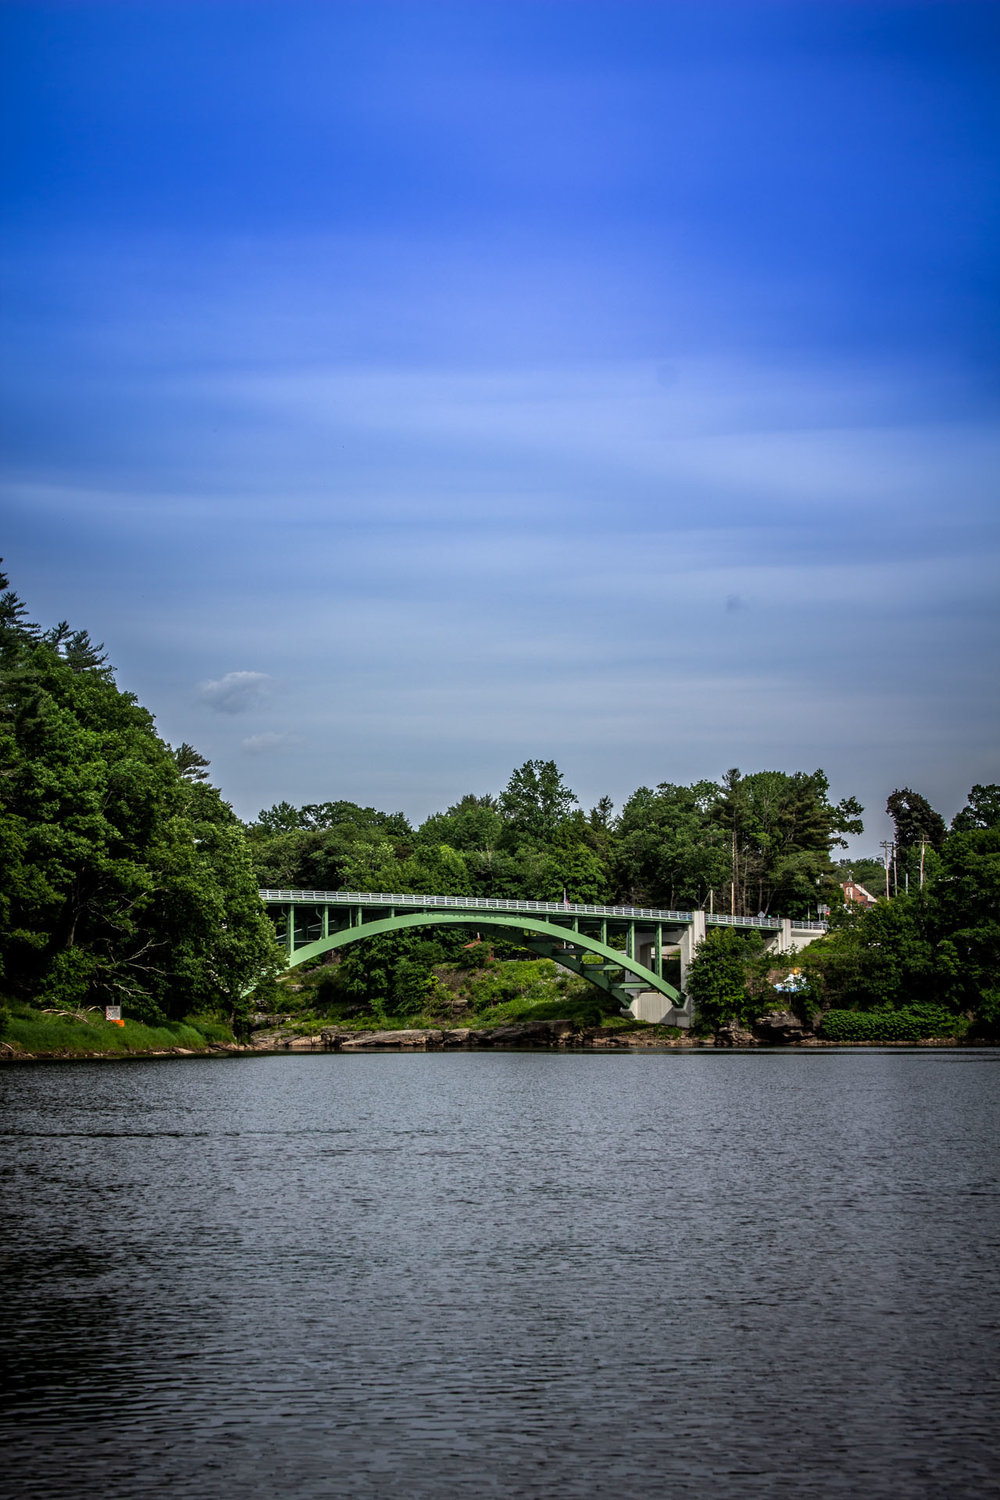 The bridge at Narrowsburg, NY.